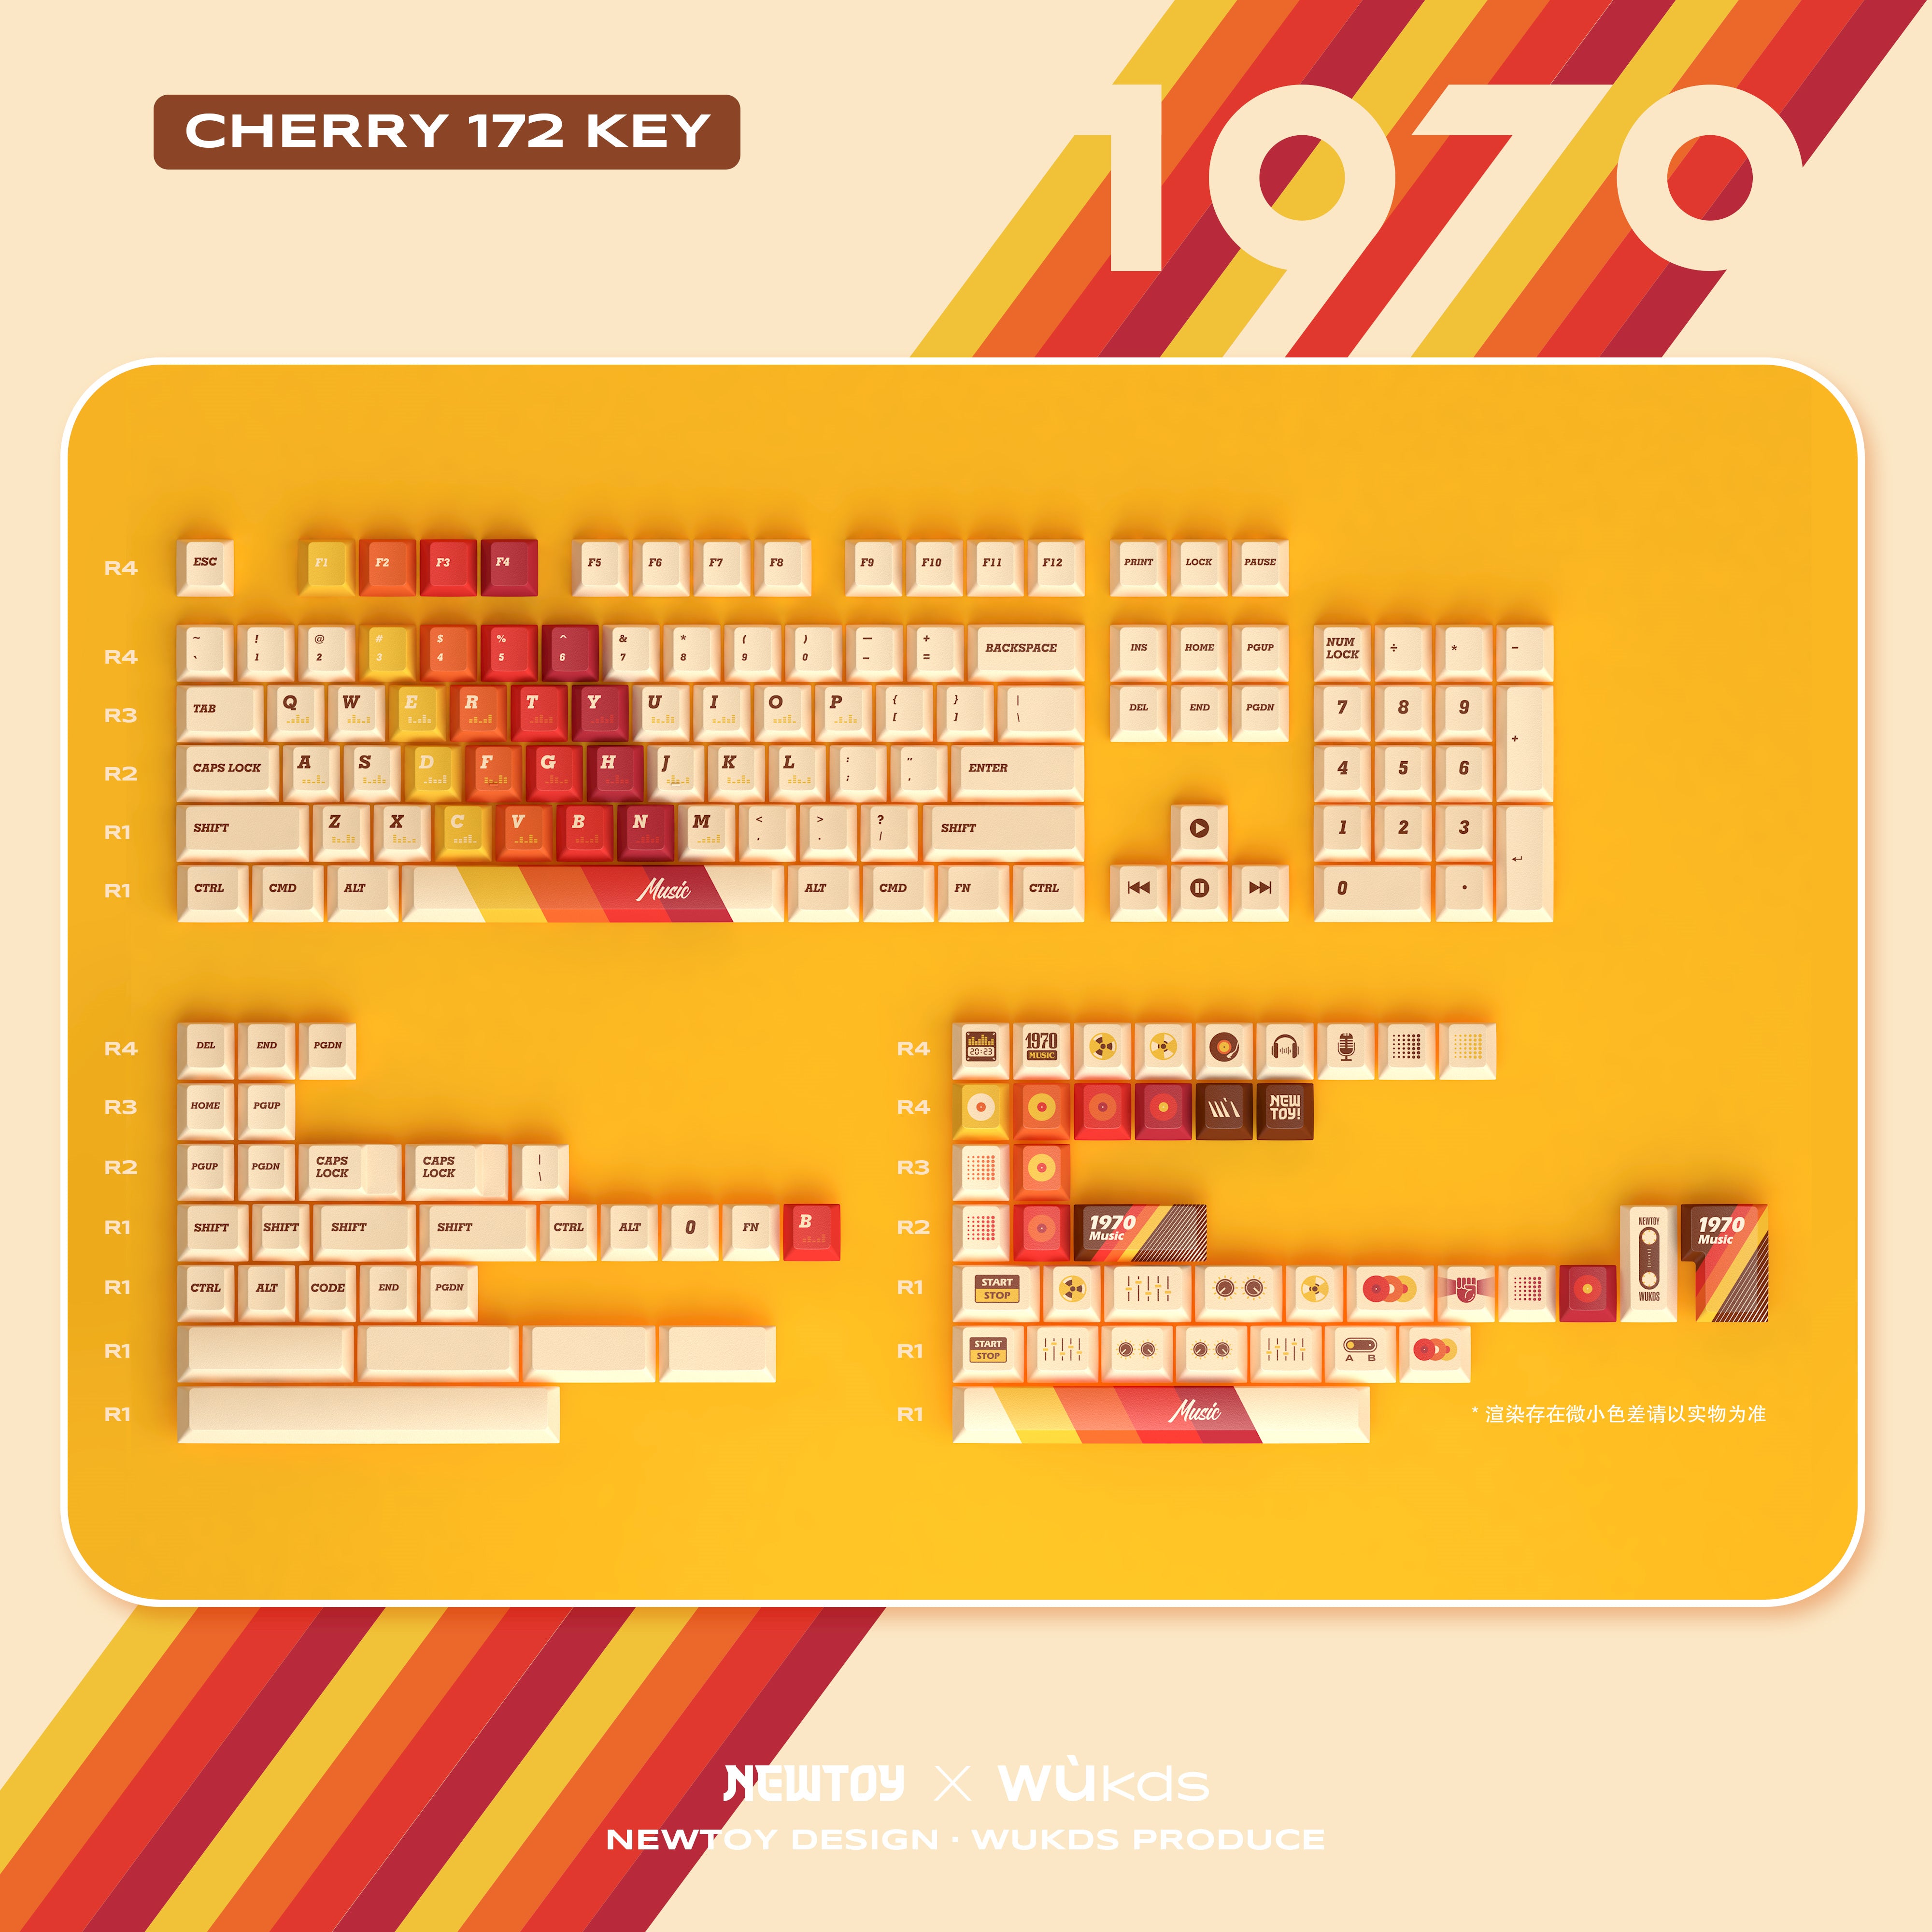 WUkds 1970 Keycap